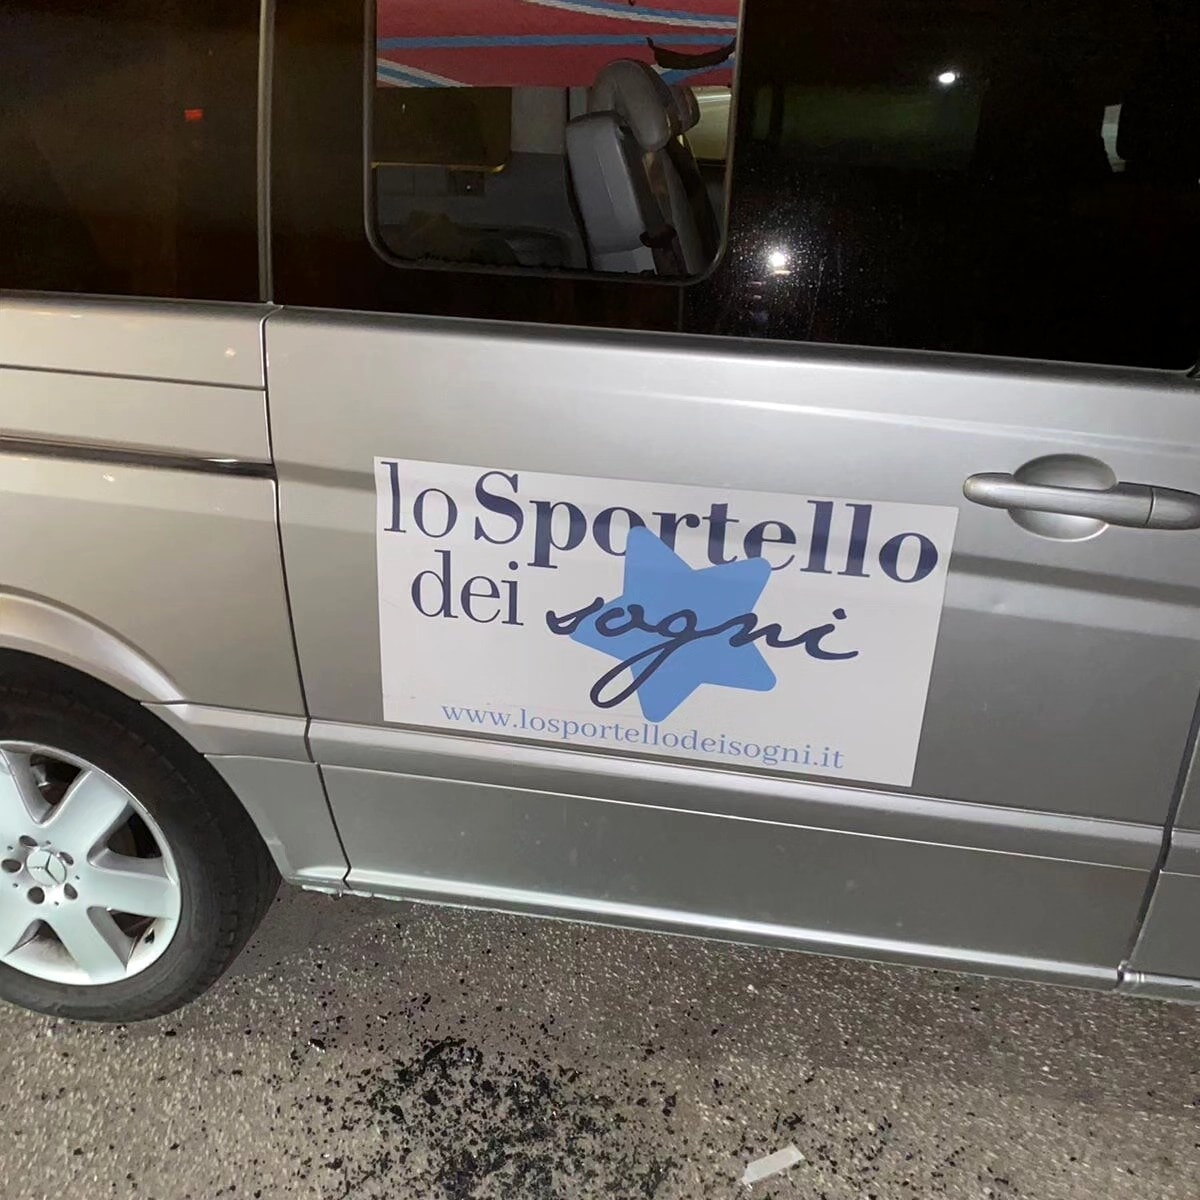 Saccheggiato il furgoncino de “Lo Sportello dei Sogni”, a Salerno: l’appello per recuperare i giochi per i piccoli pazienti oncologici